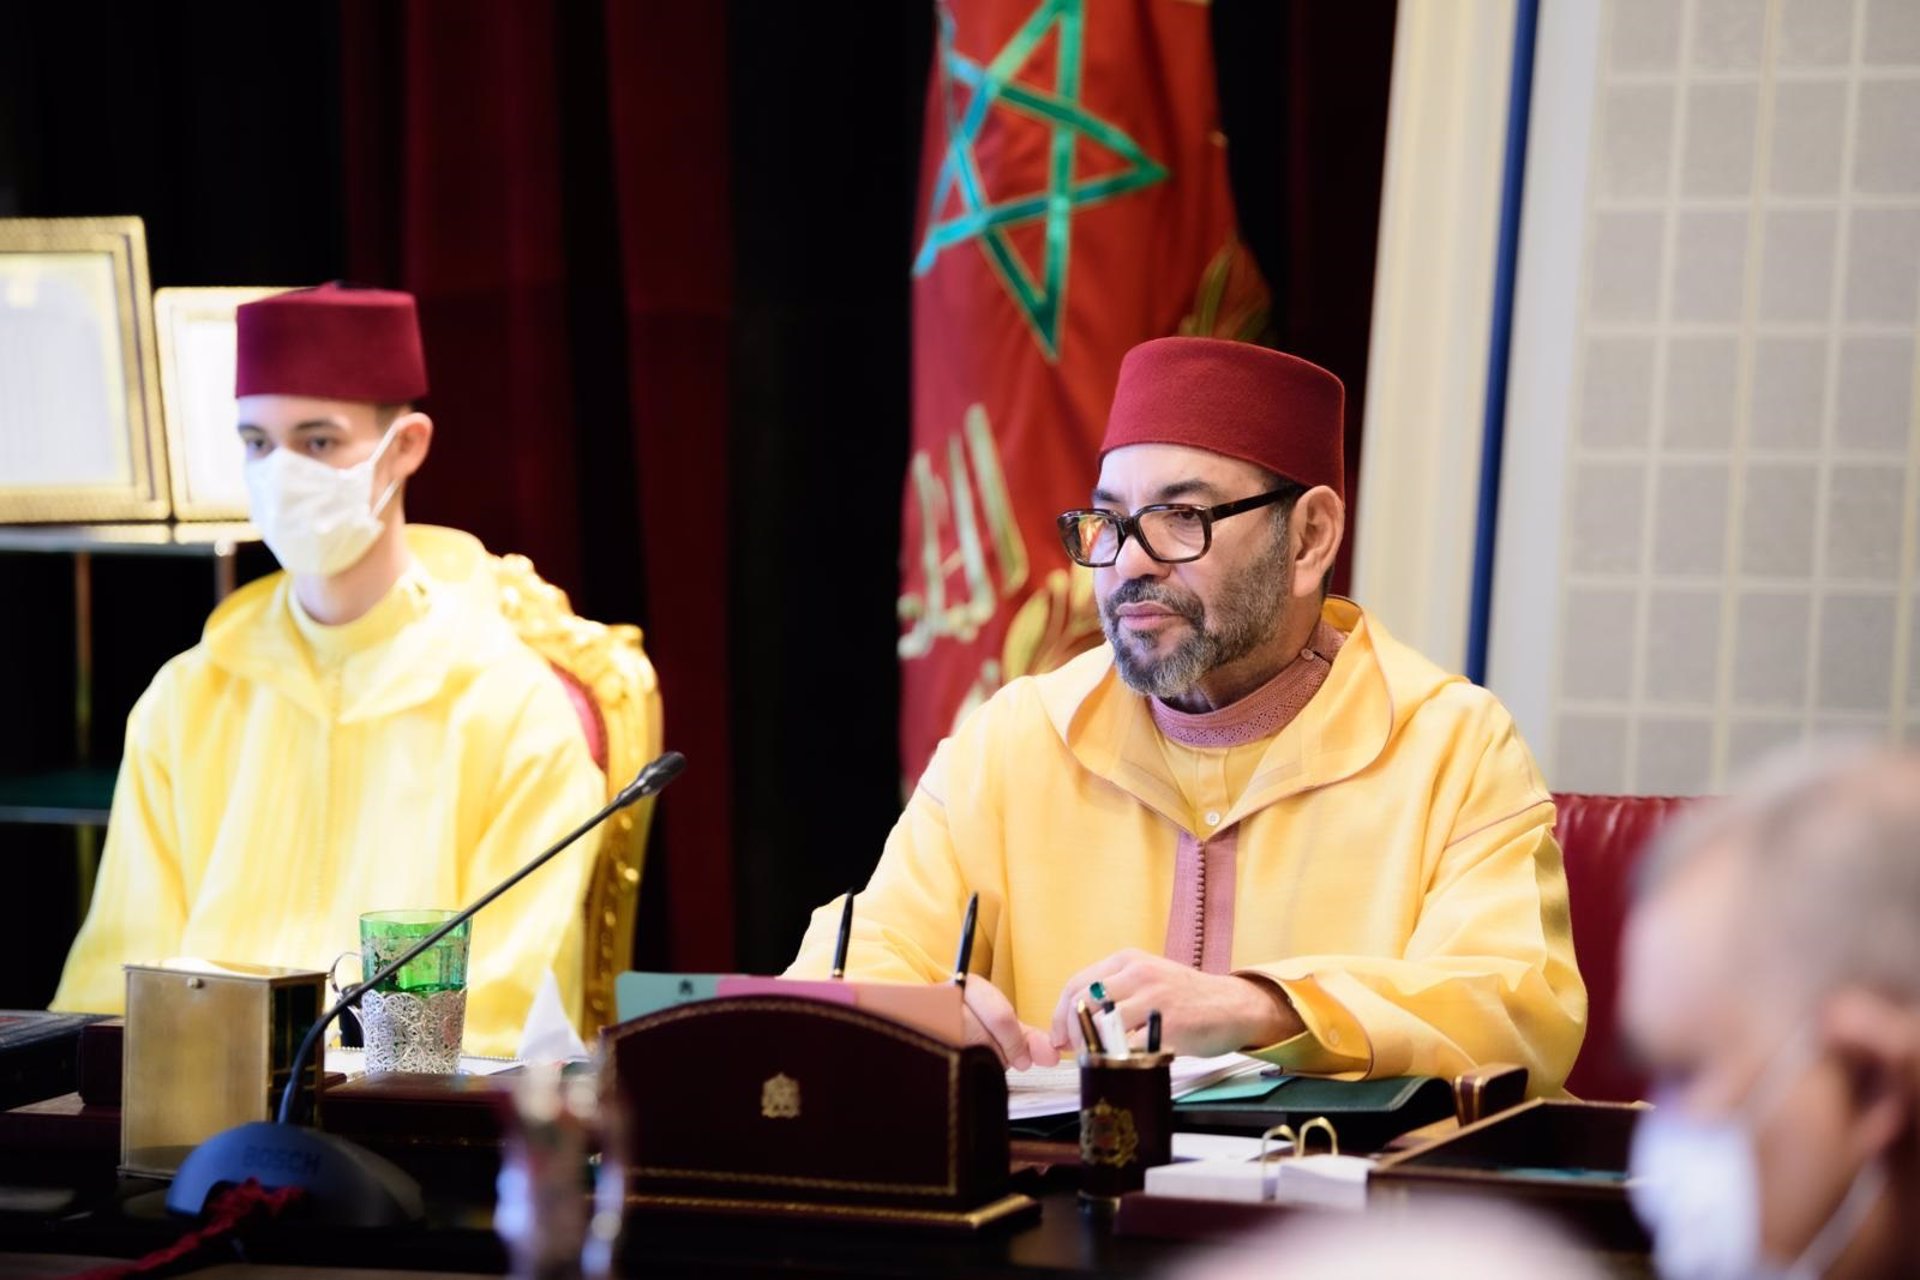 El rey de Marruecos elogia a Sánchez por su giro «responsable» en la cuestión del Sáhara